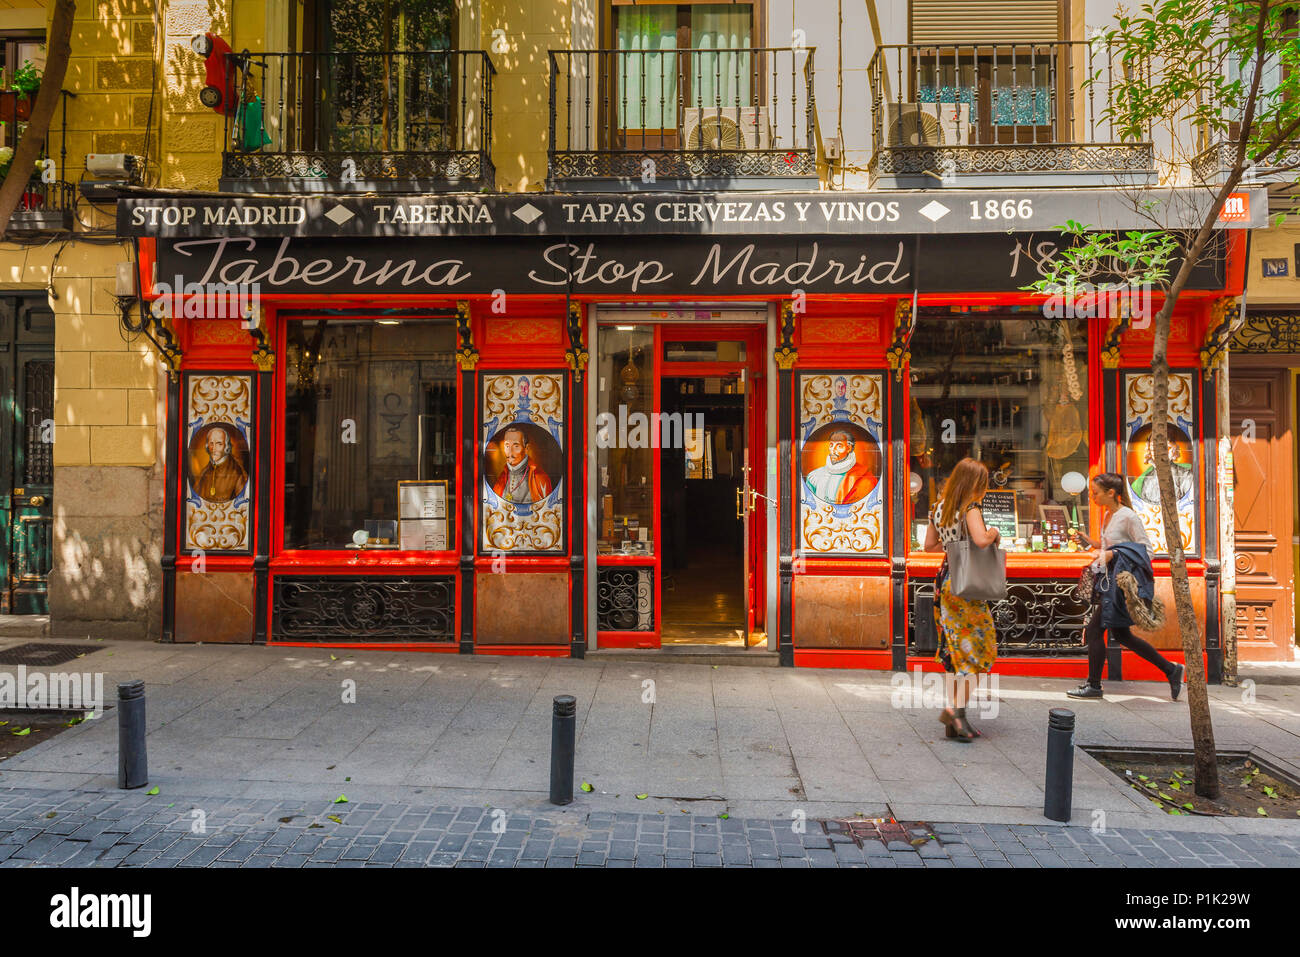 Madrid Huertas bar, vista del colorido frente de un bar en la histórica zona de Huertas de Madrid, España. Foto de stock